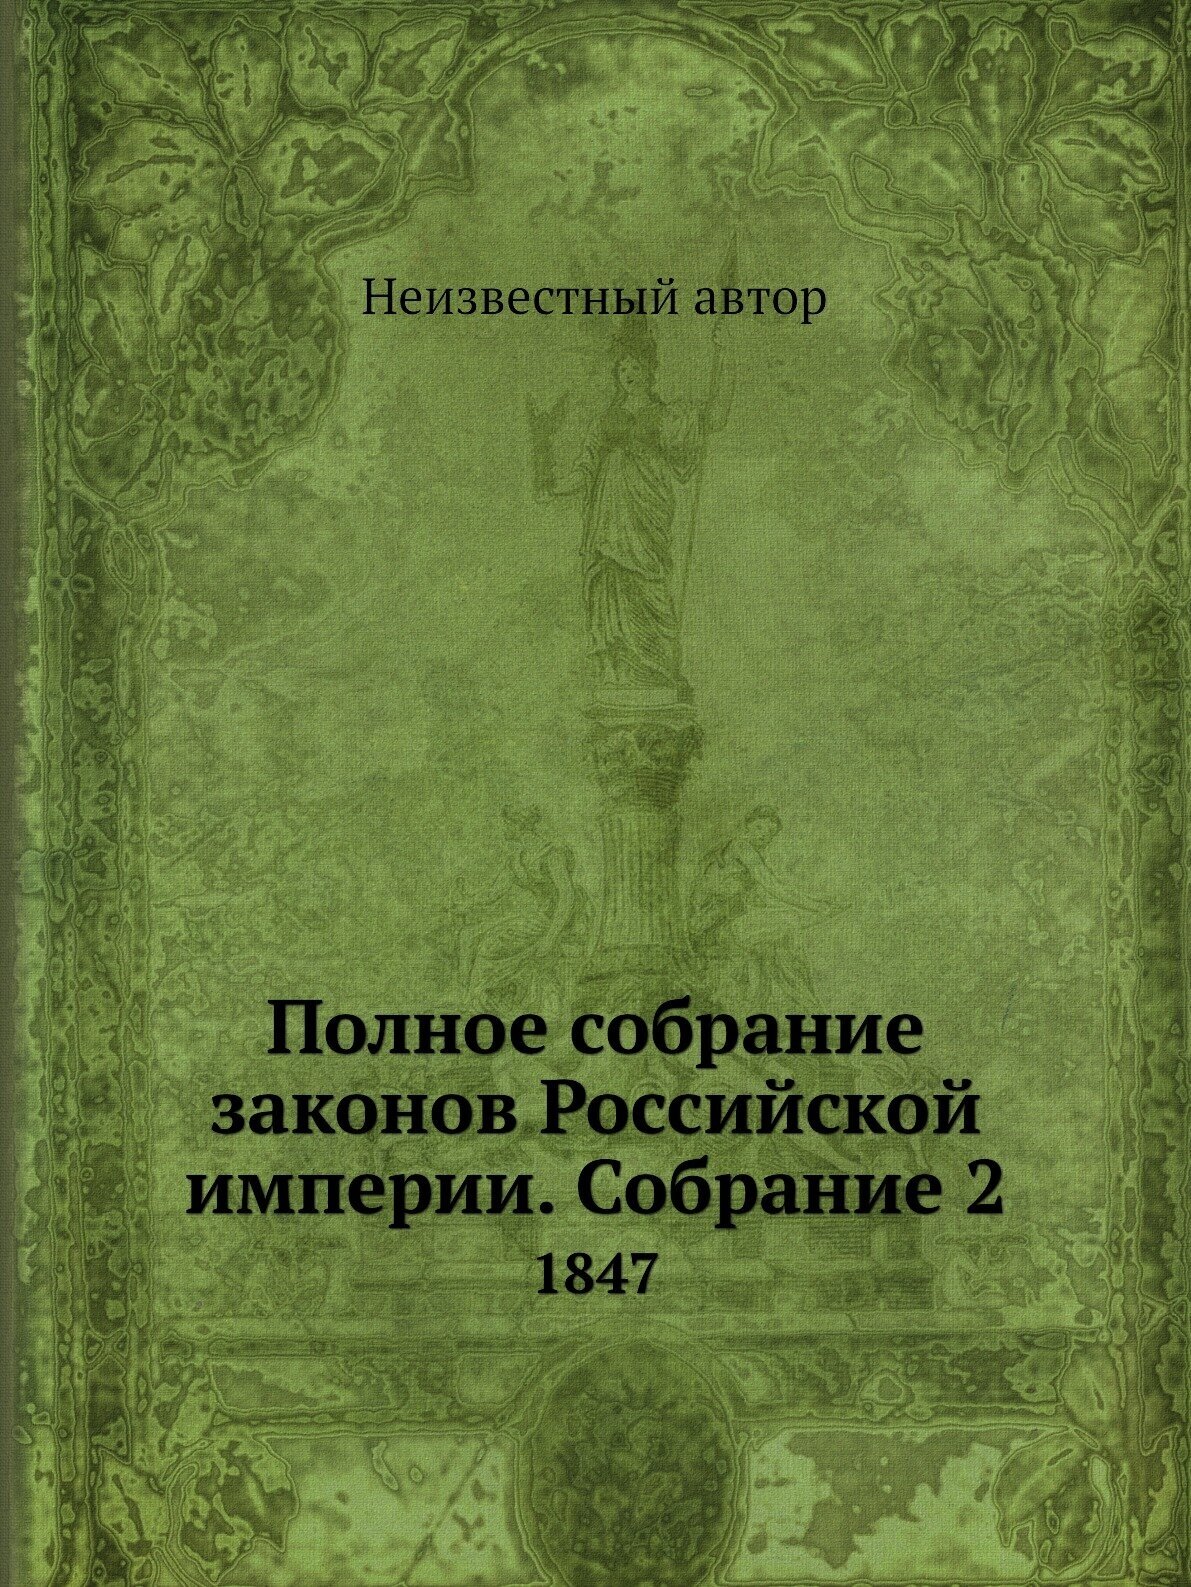 Полное собрание законов Российской империи. Собрание 2. 1847